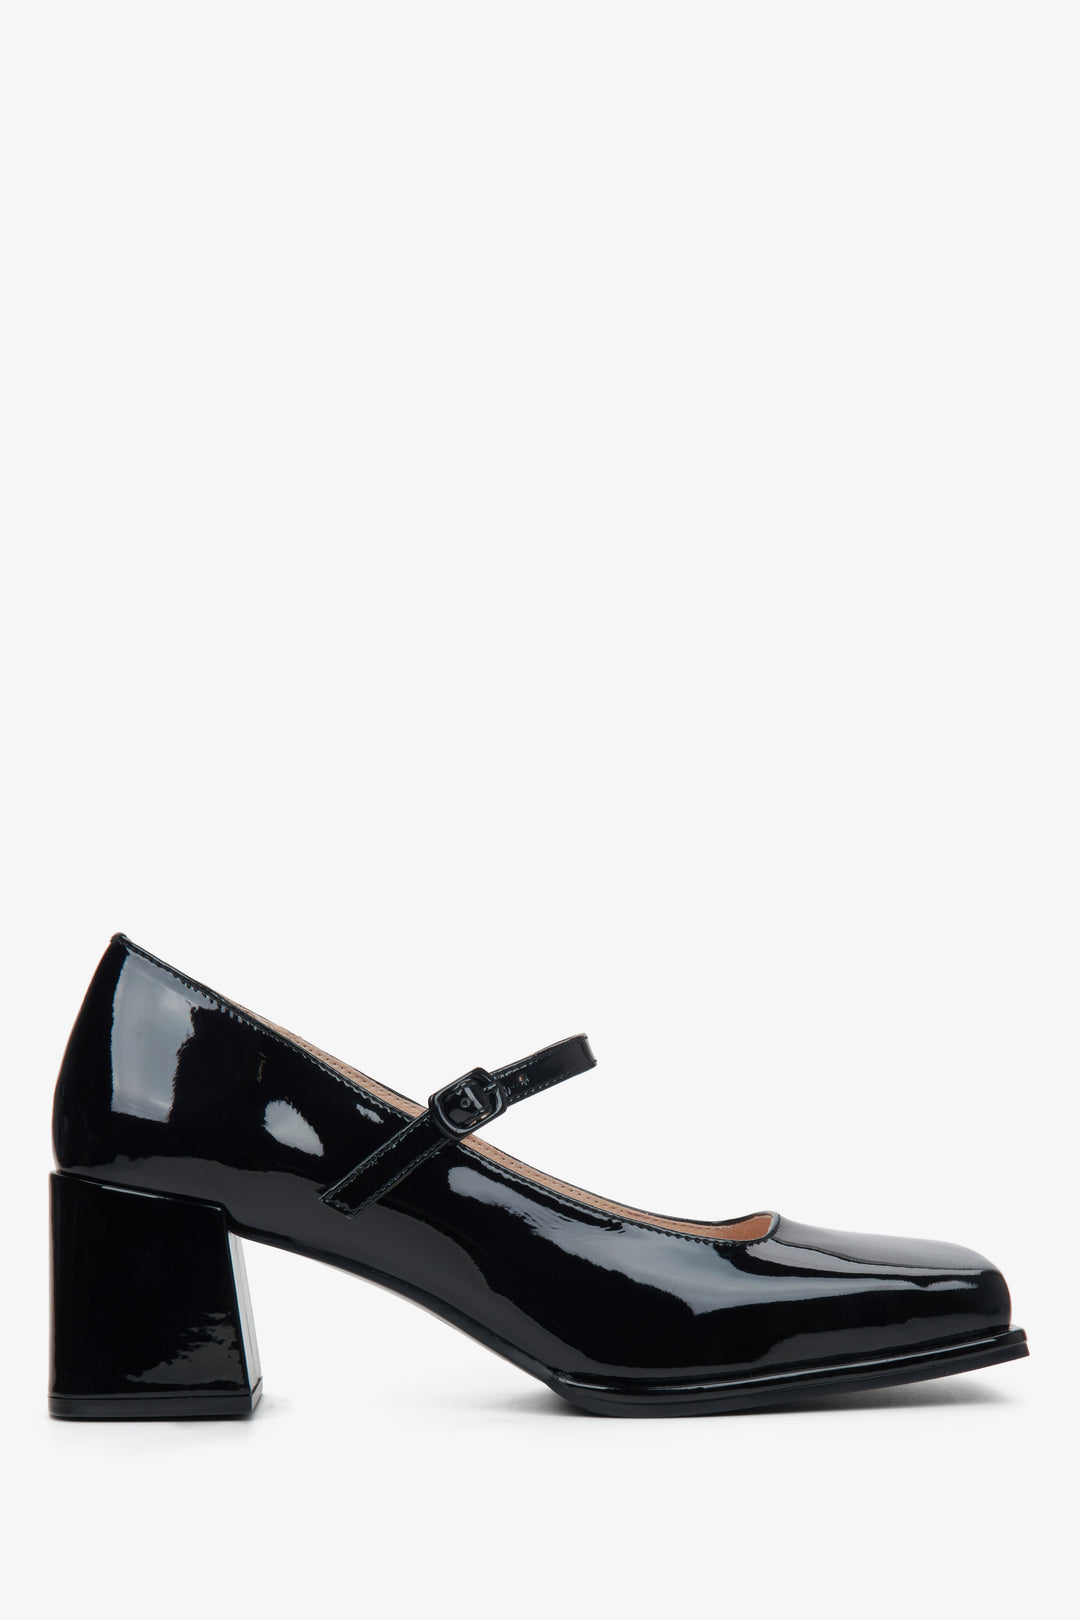 Women's black leather pumps - shoe profile.